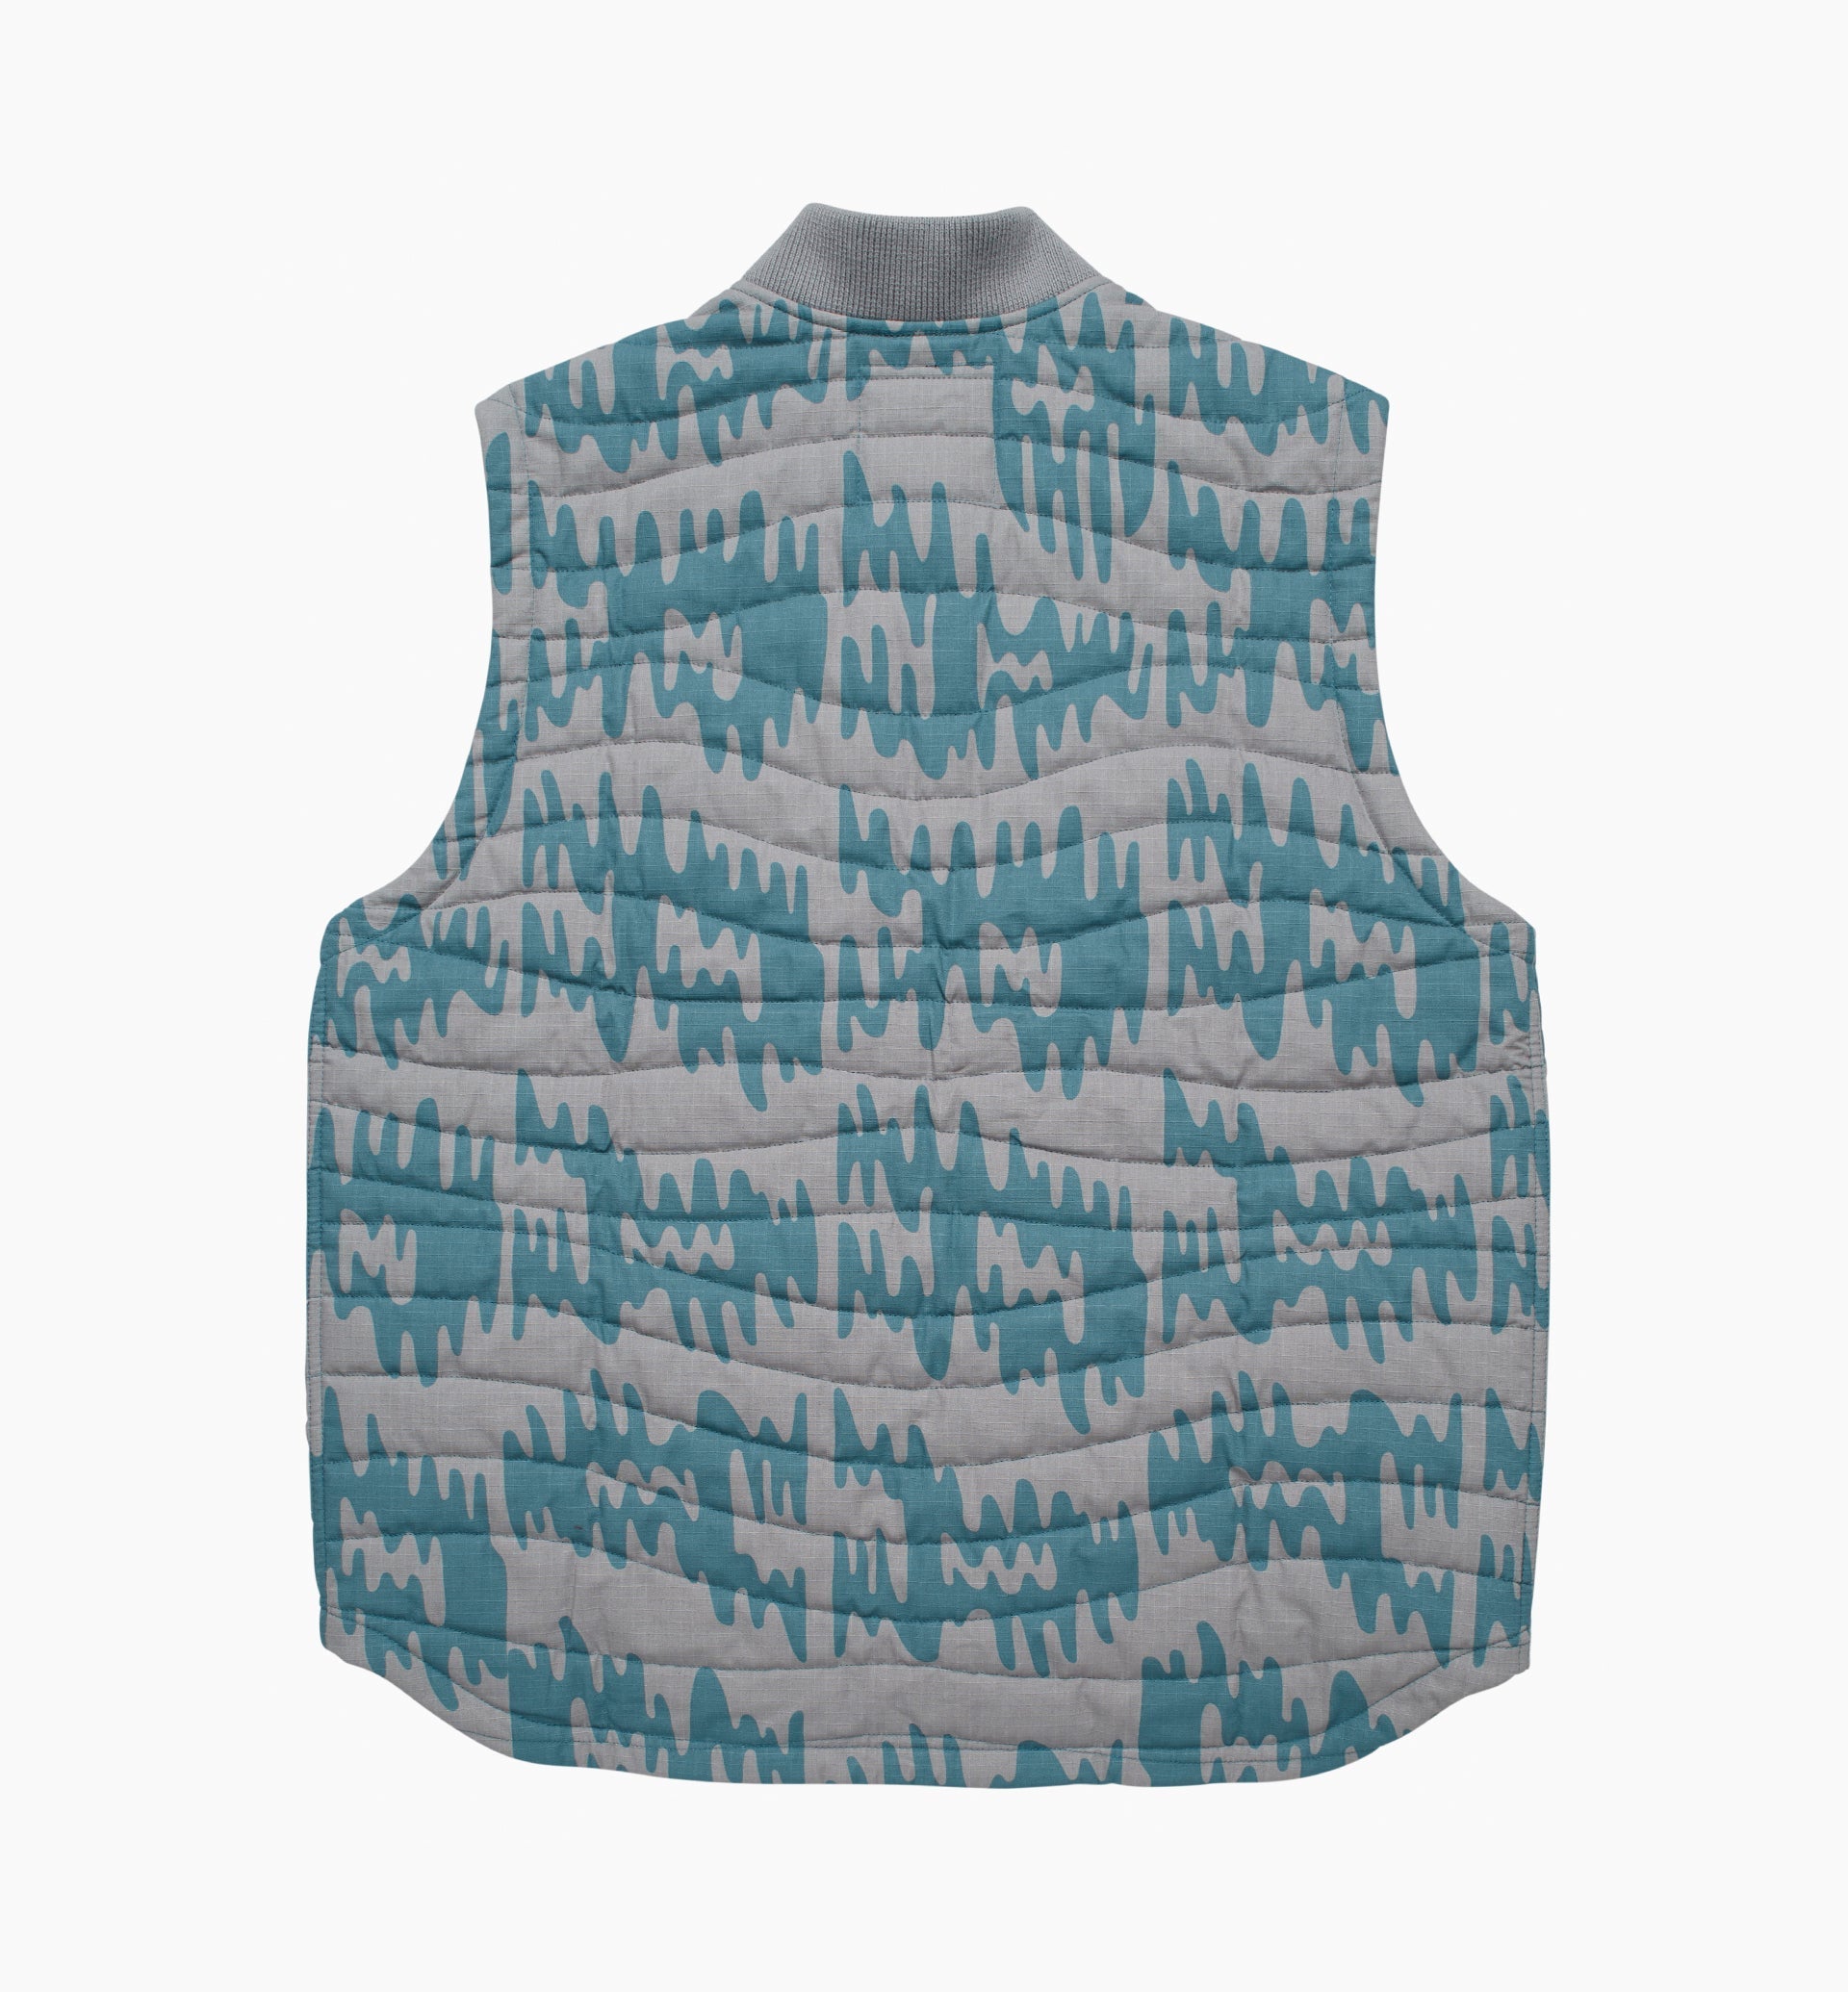 Parra - tremor pattern vest